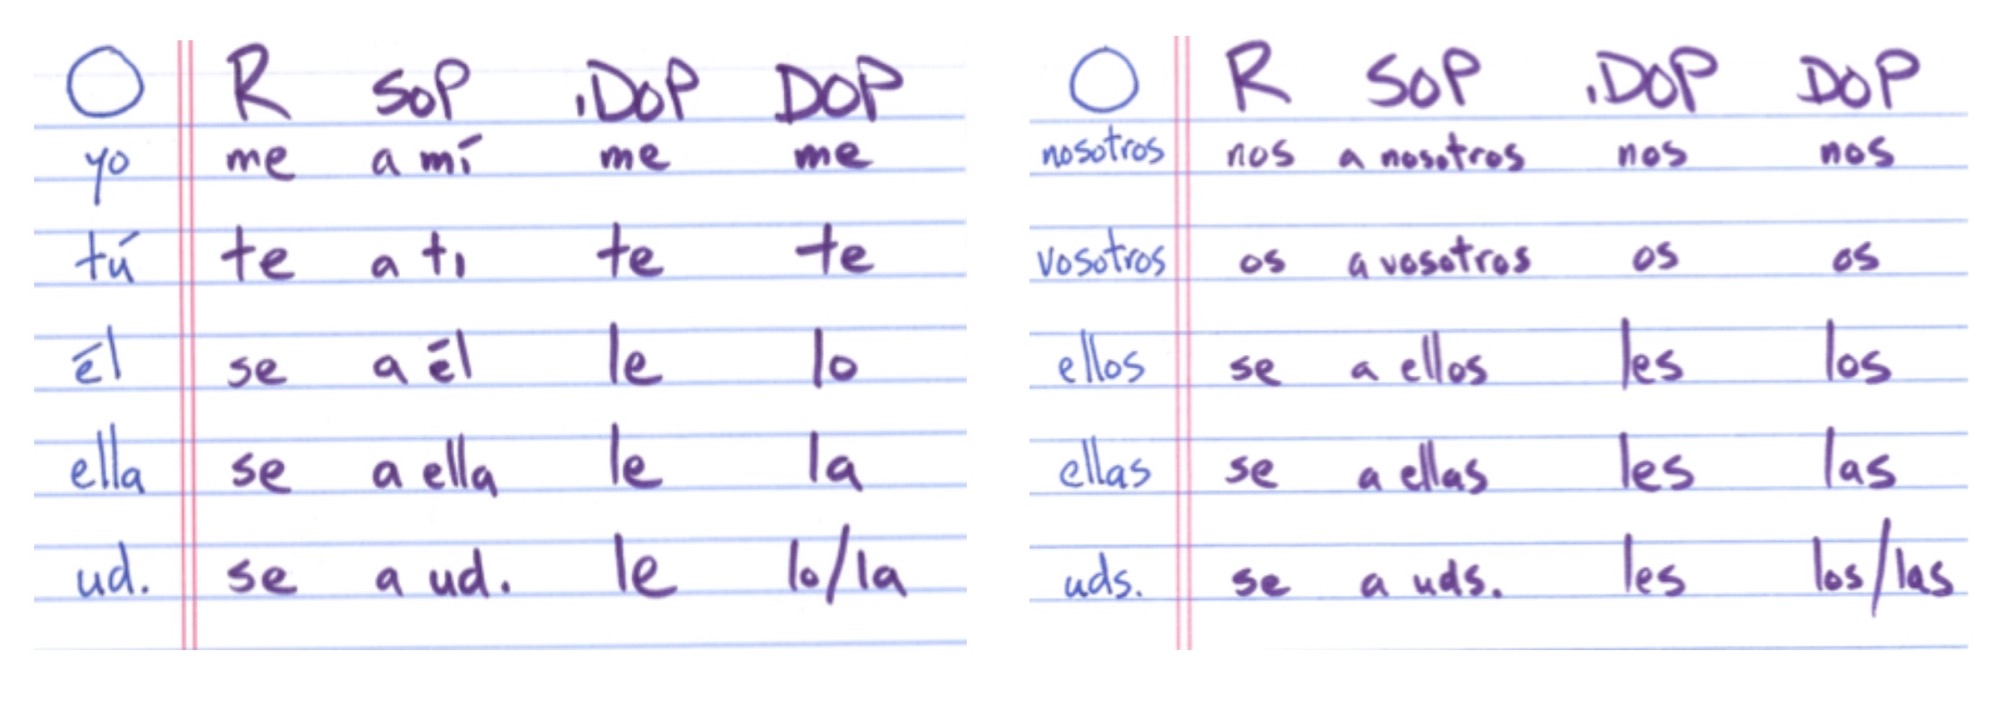 Dop Chart Spanish